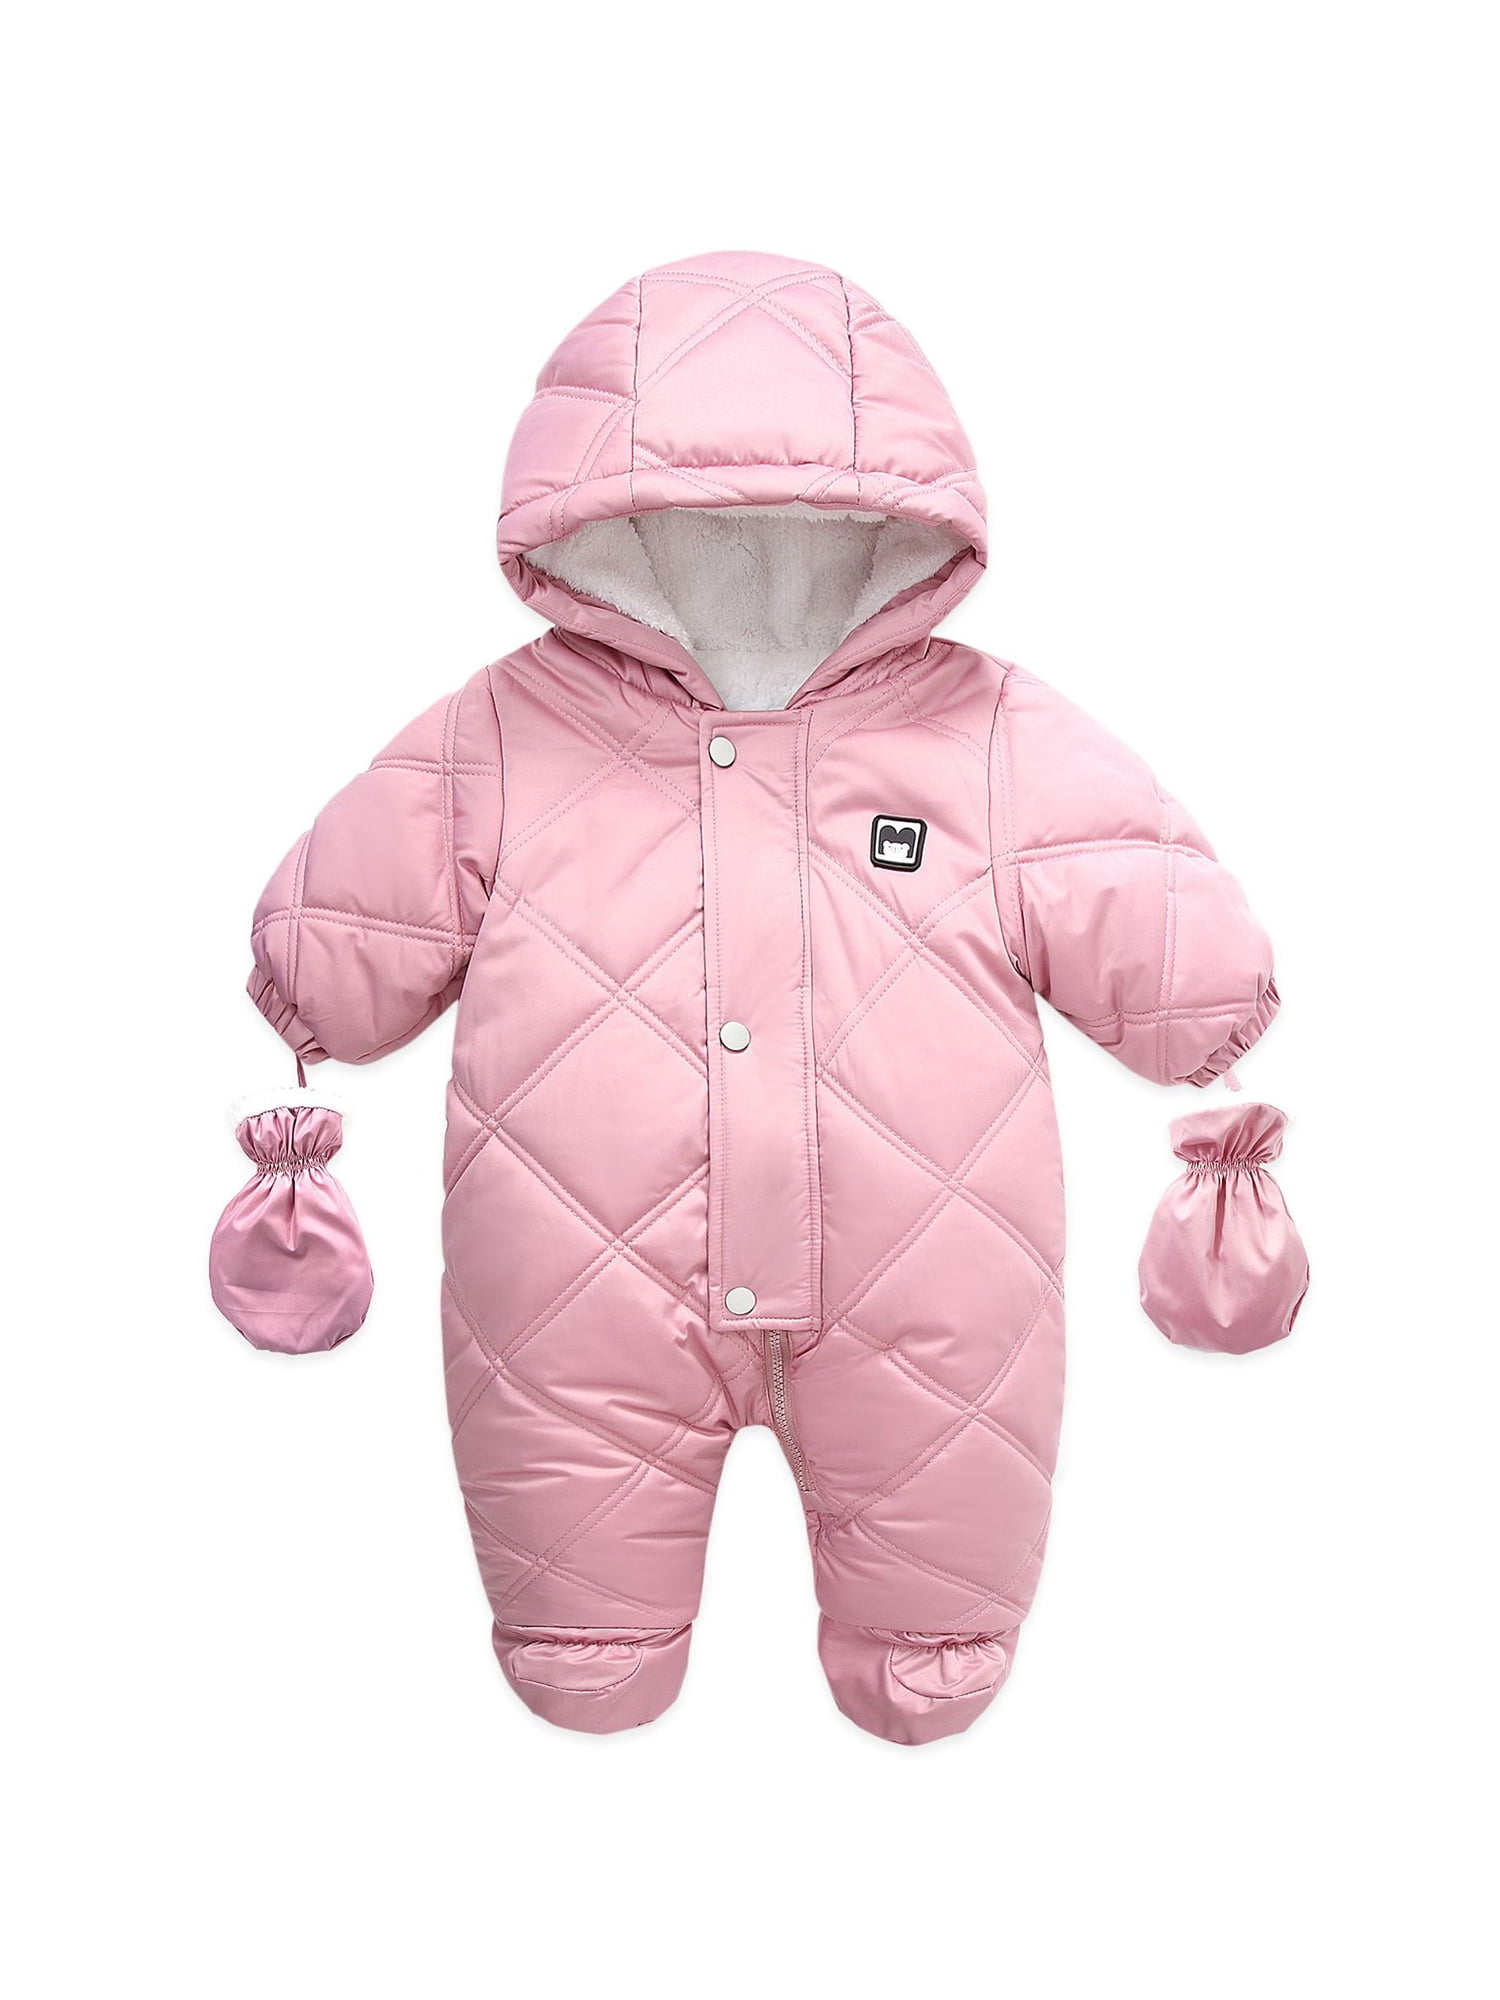 Baby Boy's Girl's Romper Bodysuit Jumpsuit Snowsuit Outfit Coat 0-9 M 